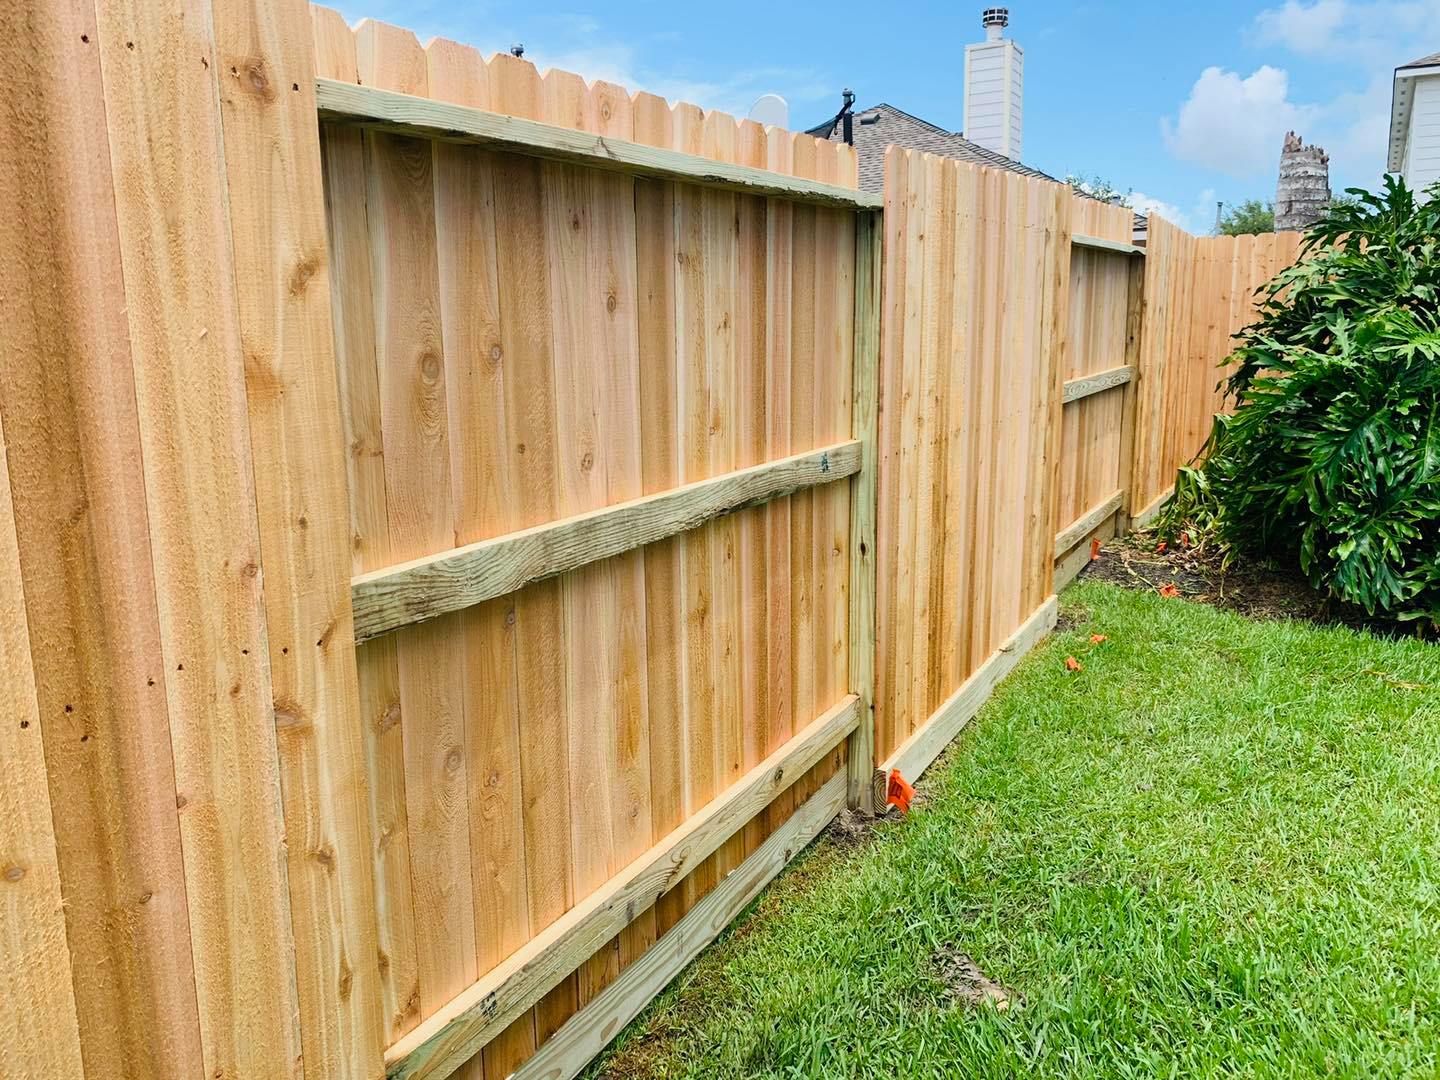 Can a Neighbor Tear Down a Shared Fence